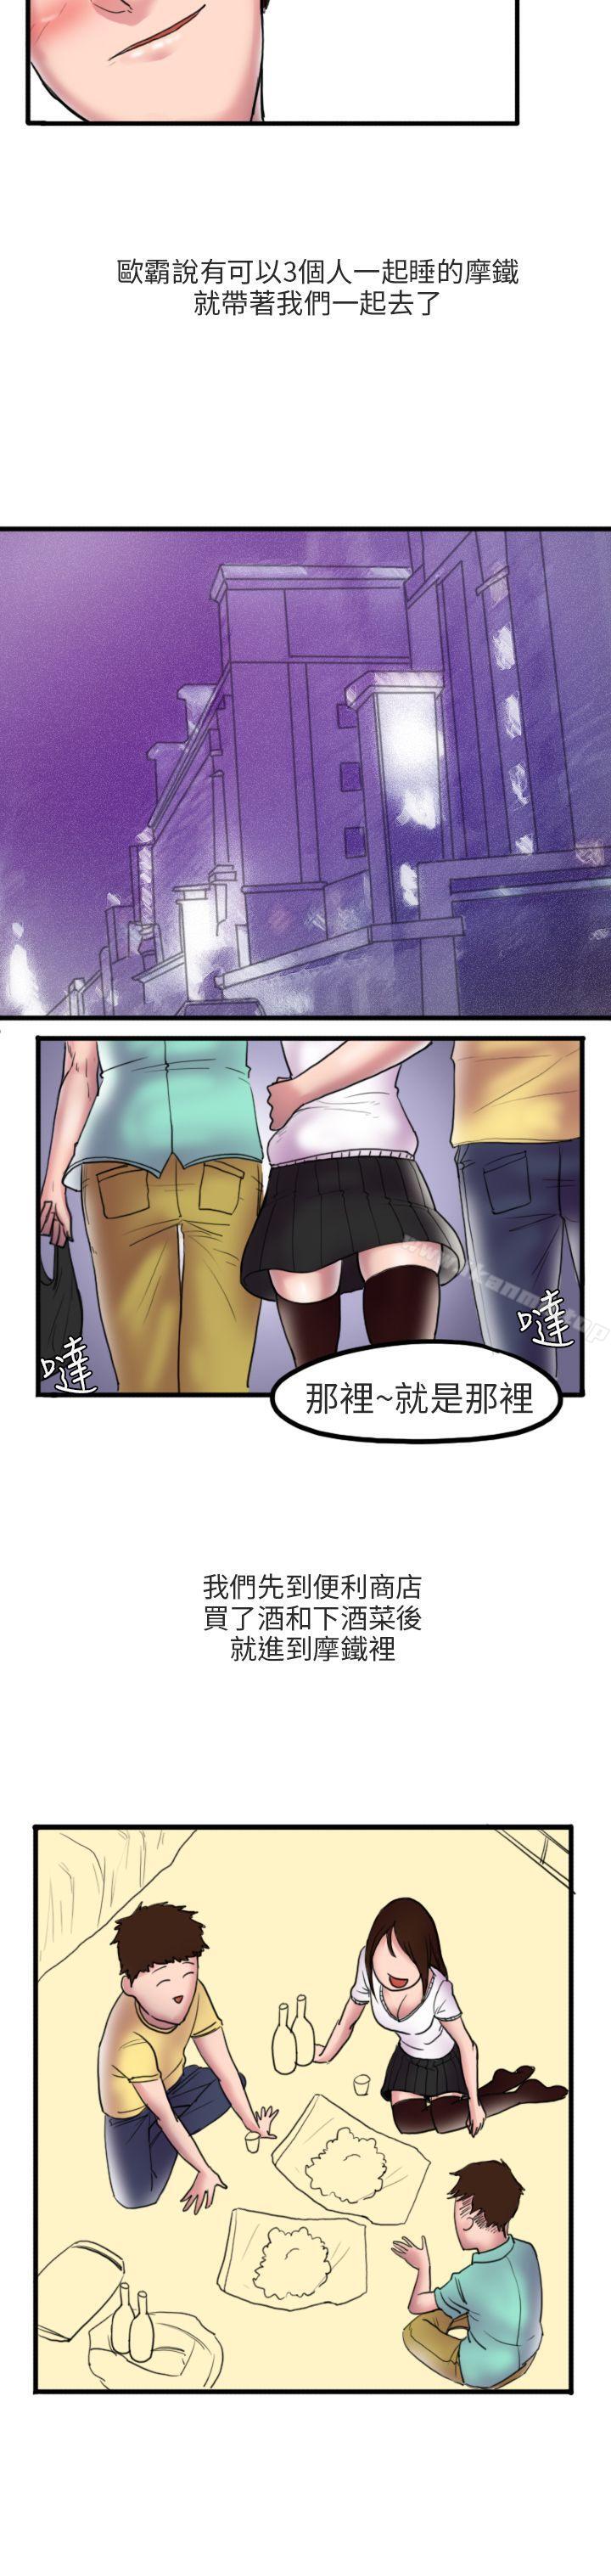 漫画韩国 秘密Story第二季   - 立即阅读 第二季 床與牆壁之間(上)第7漫画图片